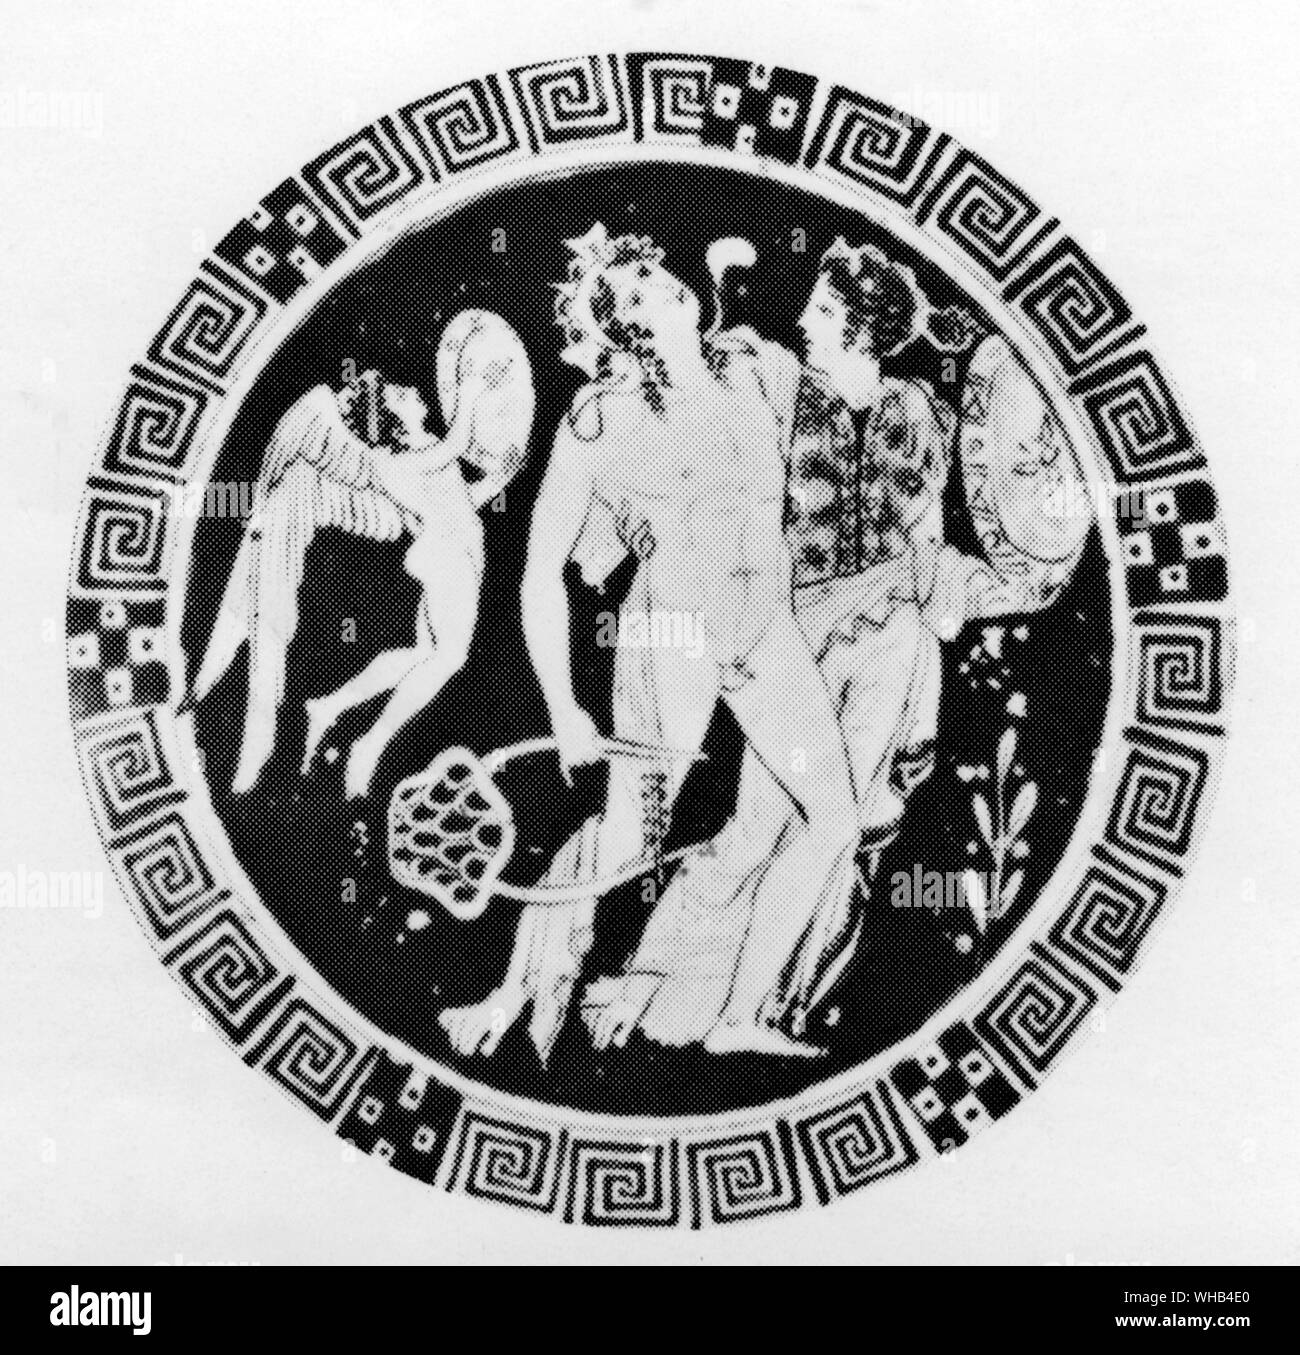 Dioniso & Ariadne scortato da Eros, su un attico cup 400-390BC -. Dioniso o Dionysos associato con Romano Liber, il dio greco del vino, rappresenta non solo il potere inebriante del vino, ma anche la sua funzione sociale e influenze benefiche. Era conosciuto anche come Bacco. Egli è visto come il promotore di civiltà, di un legislatore e amante del nostro scettico come pure la divinità patrona di agricoltura e il teatro. Era conosciuto anche come il liberatore -. Ariadne, divenne la consorte del dio Dioniso -. L'Eros è raffigurato come un angelo che indossa una tunica bianca, porta un arco a forma di cuore le frecce e un Foto Stock